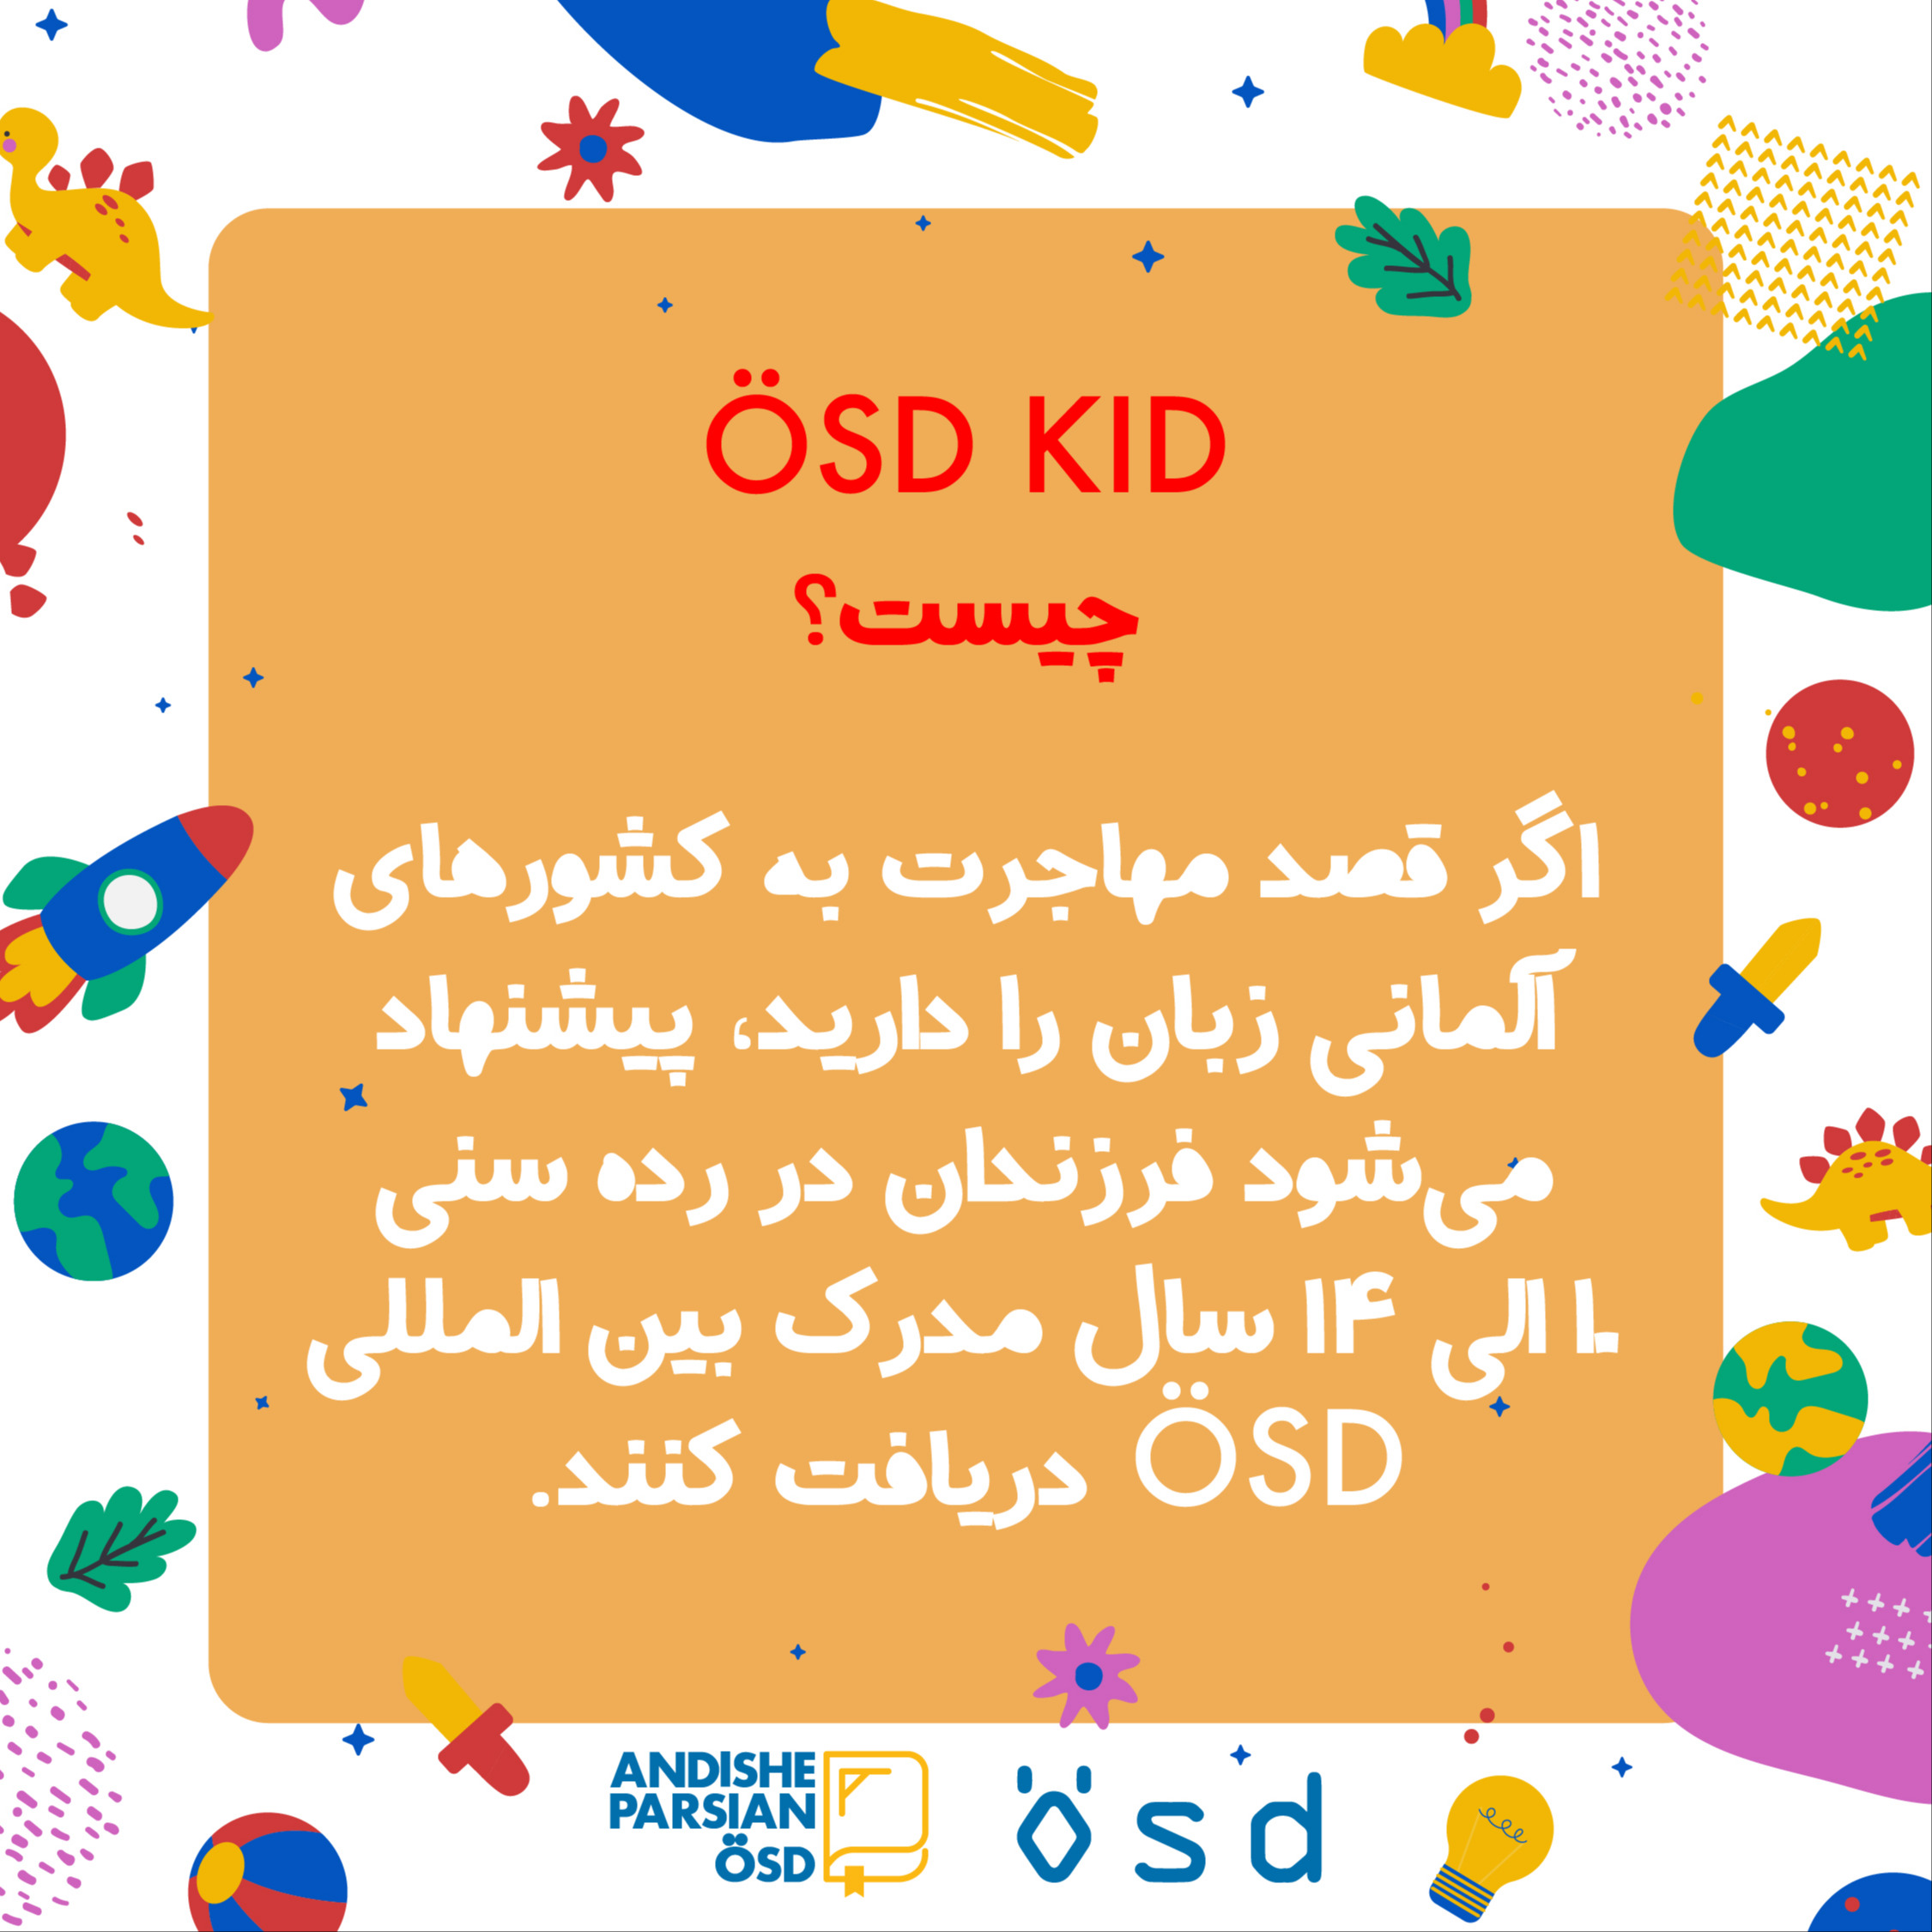 برگزاری آزمون ÖSD  کودکان دراندیشه پارسیان